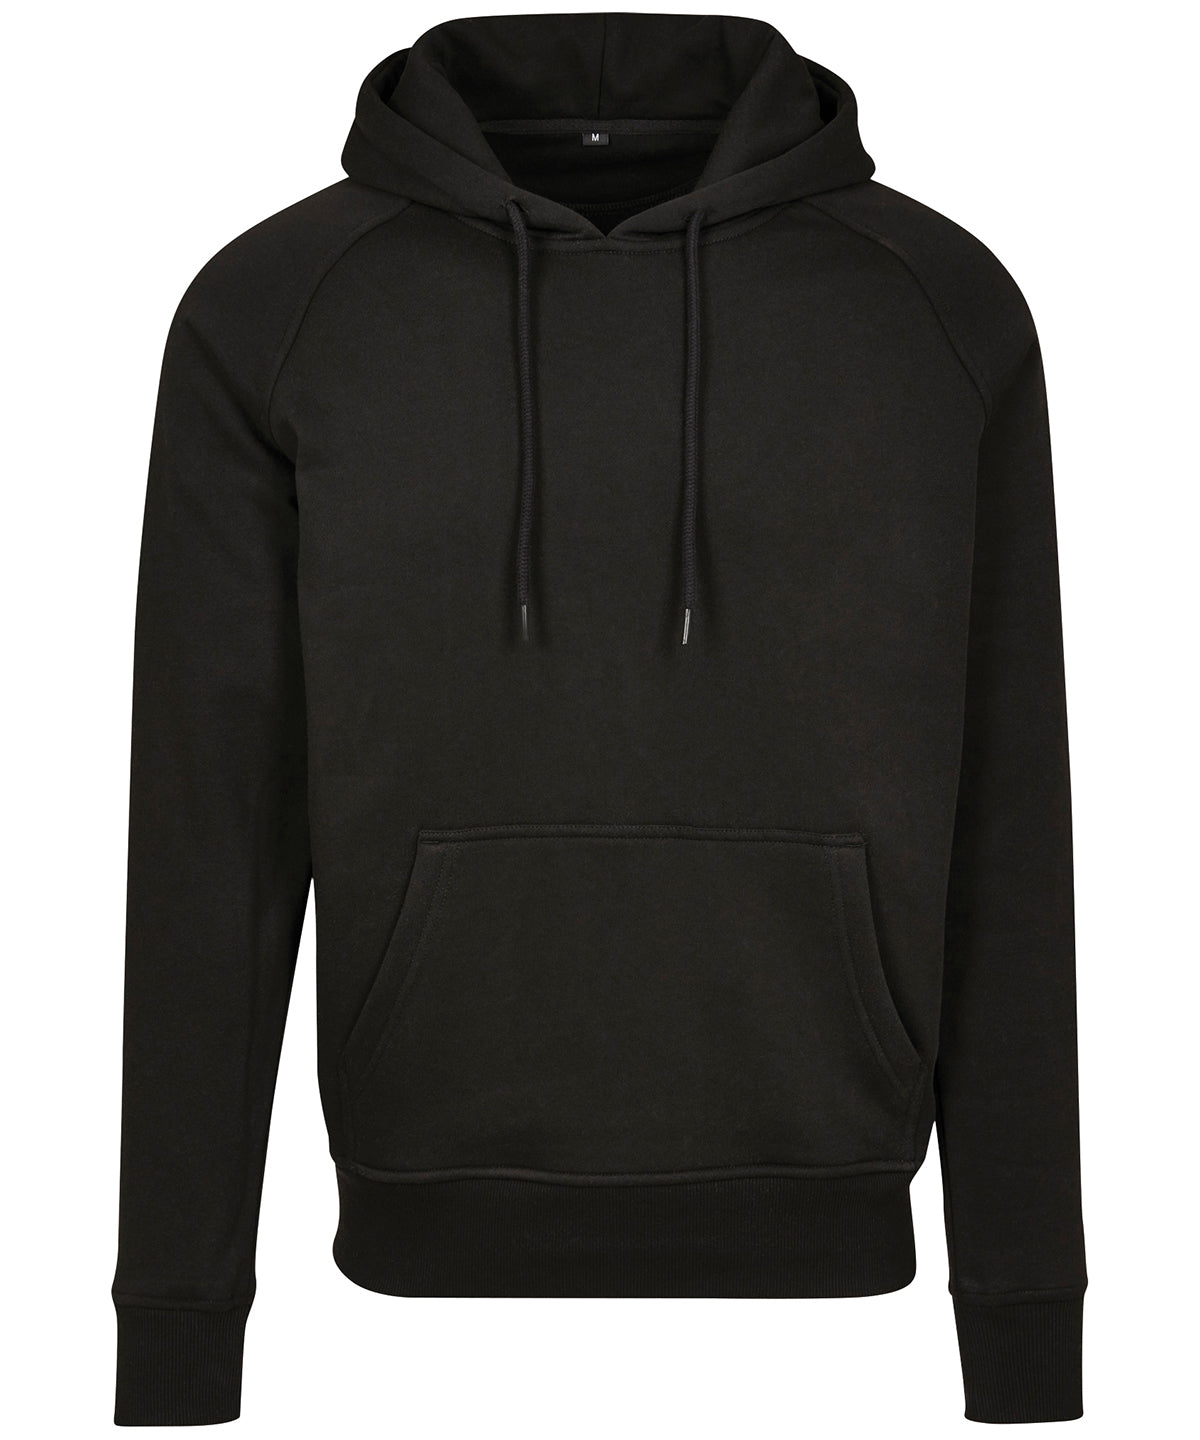 Personalised Hoodies - Black Build Your Brand Raglan sweat hoodie